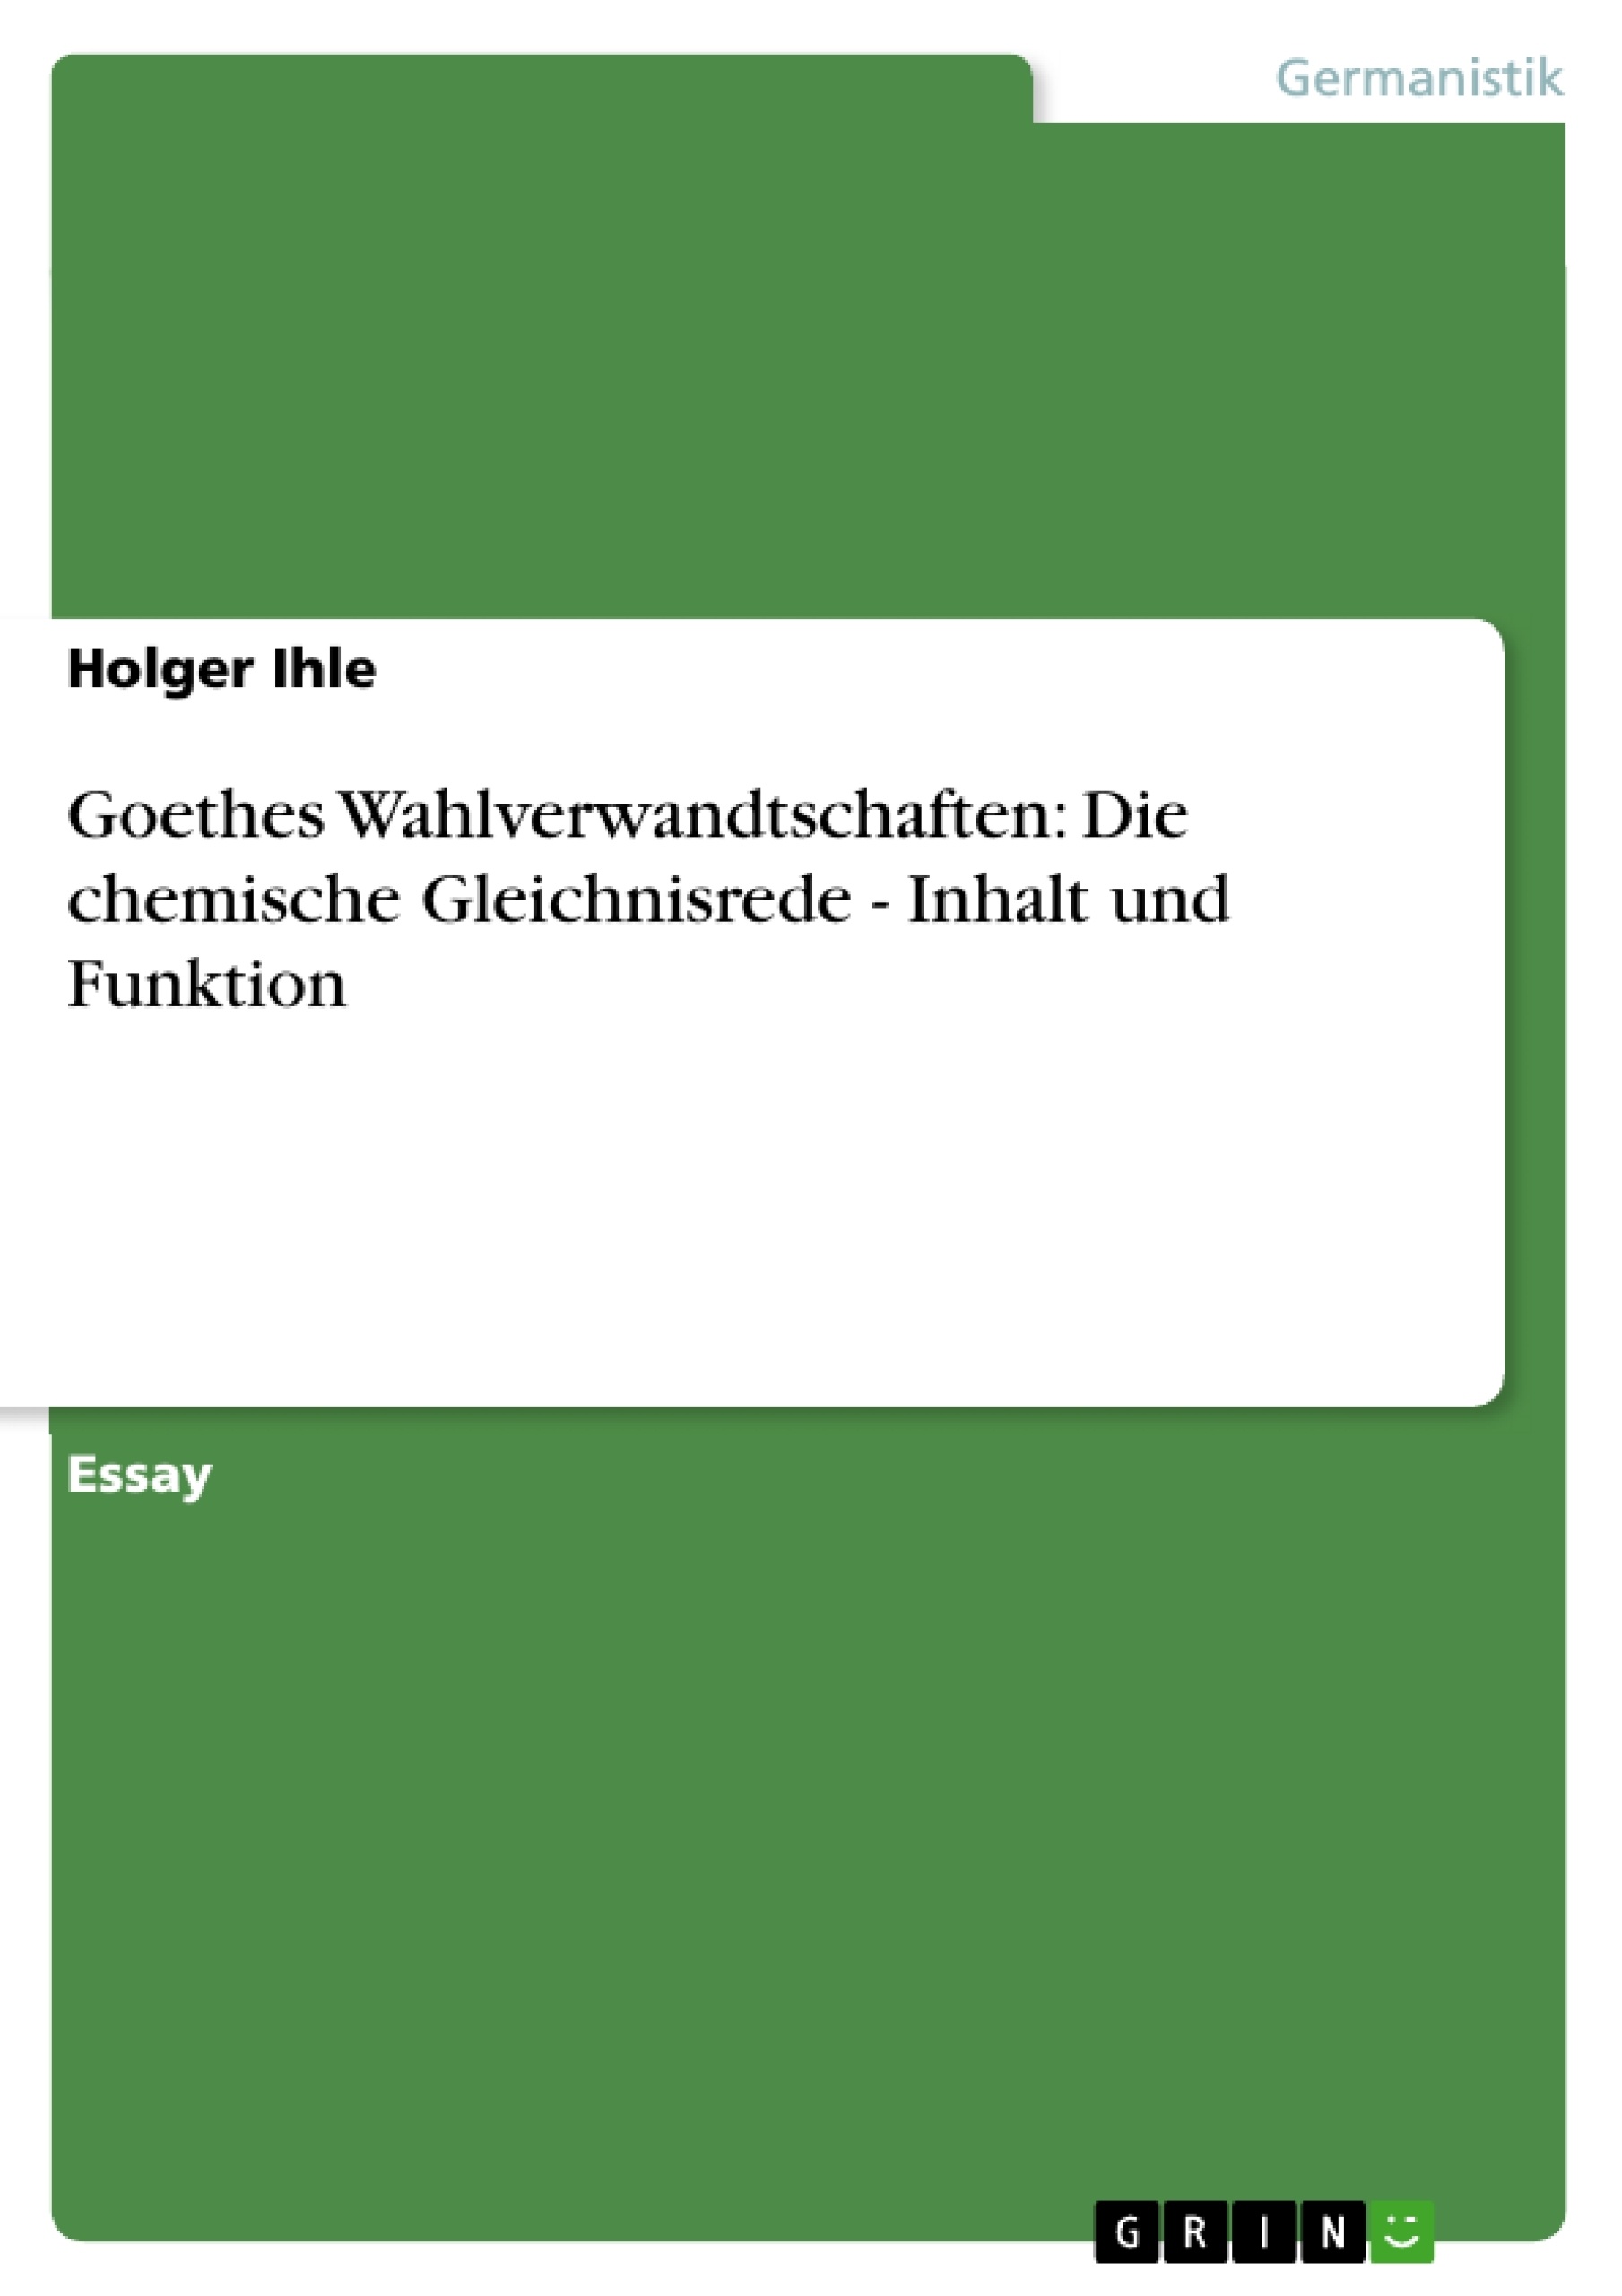 Title: Goethes Wahlverwandtschaften: Die chemische Gleichnisrede - Inhalt und Funktion